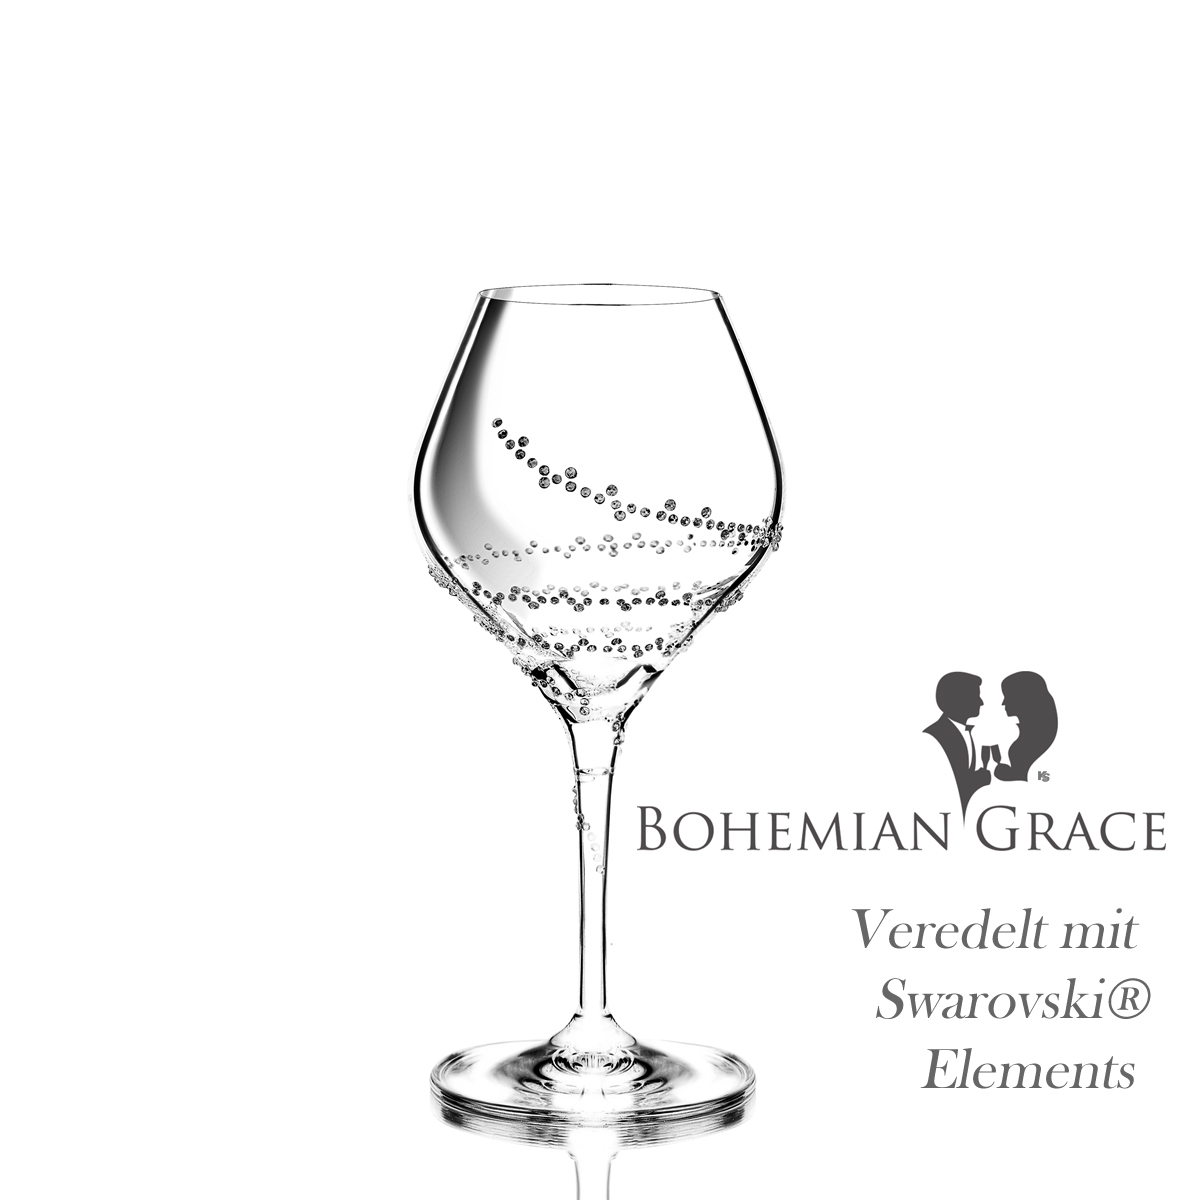 Weinglas 2Stk SELENE Bohemian Grace - Weissweingläser SELENE 2Stk, mit Swarovski Elements